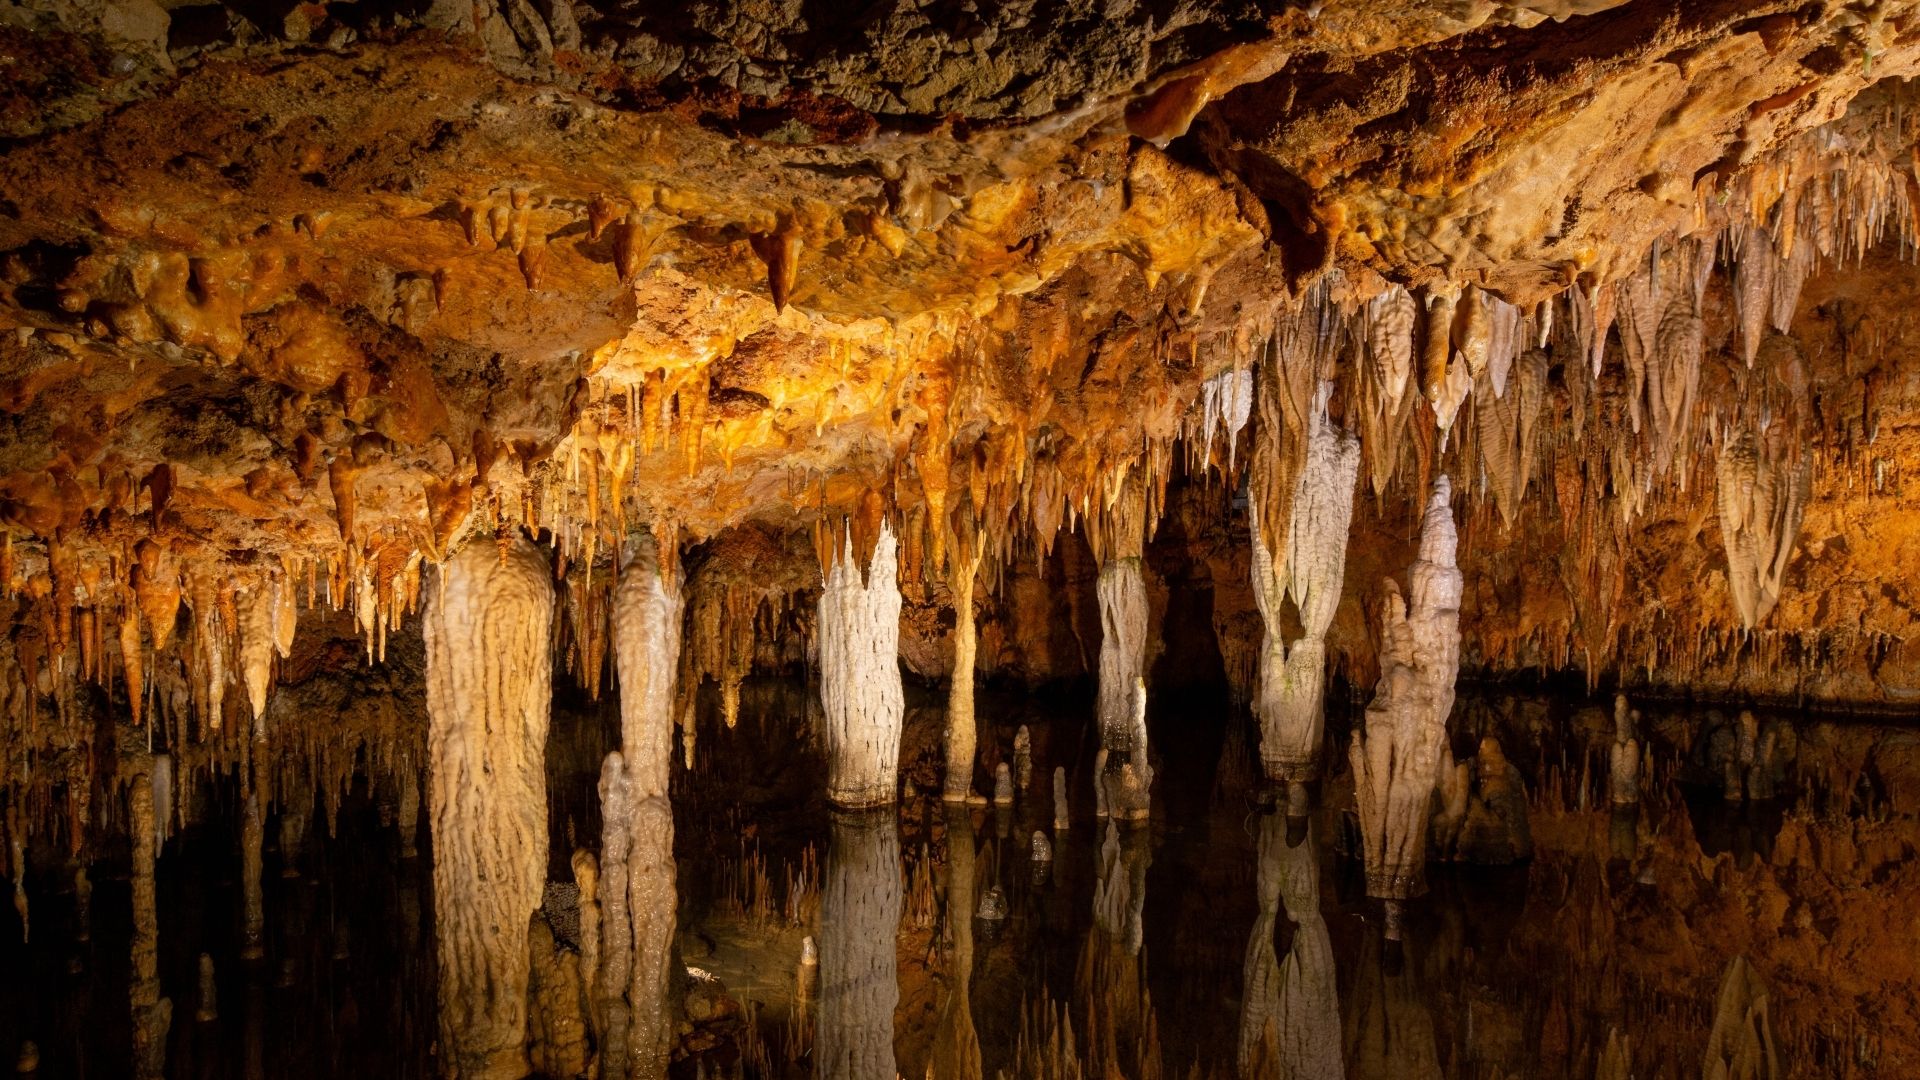 Meramec Caverns features glistening stalactites and magnificent stalagmites.